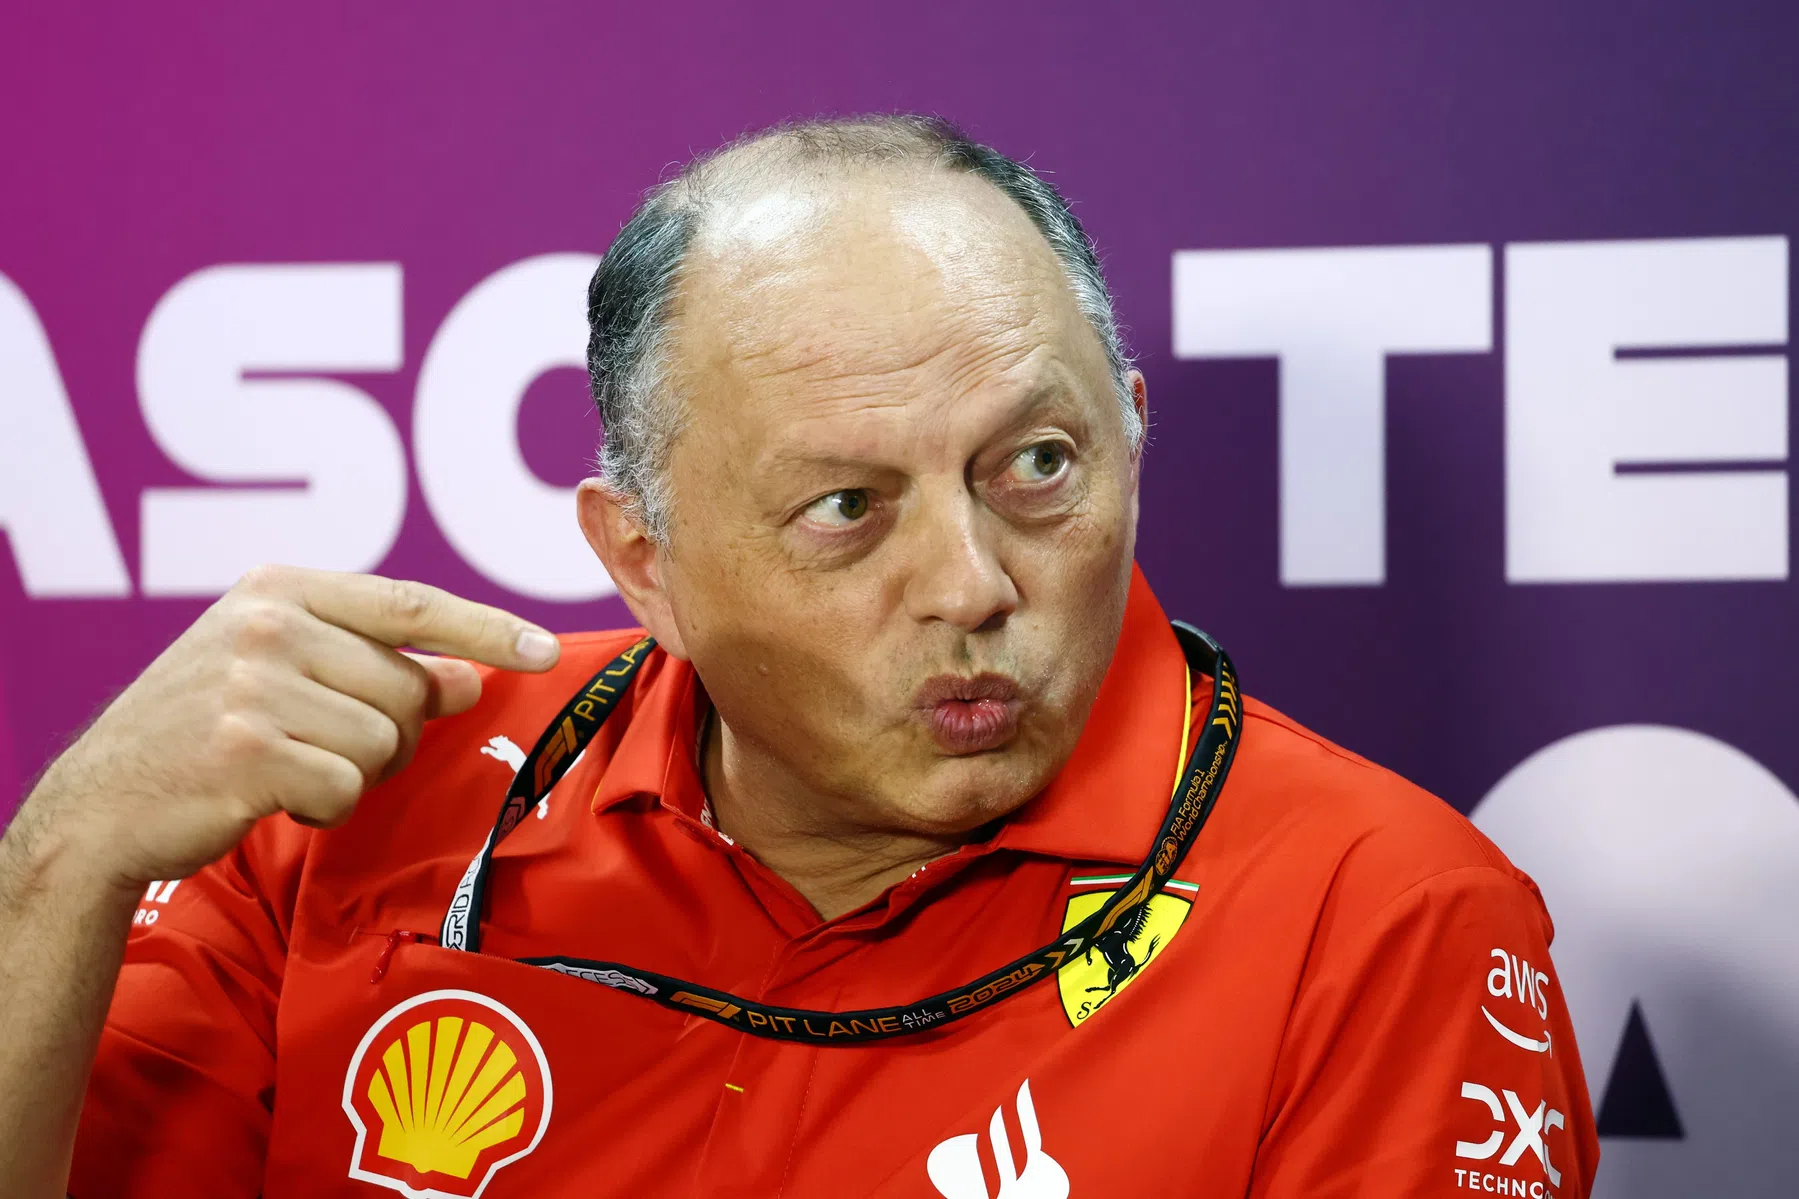 Vasseur avisa que os pilotos de F1 da Ferrari estão em ótima forma